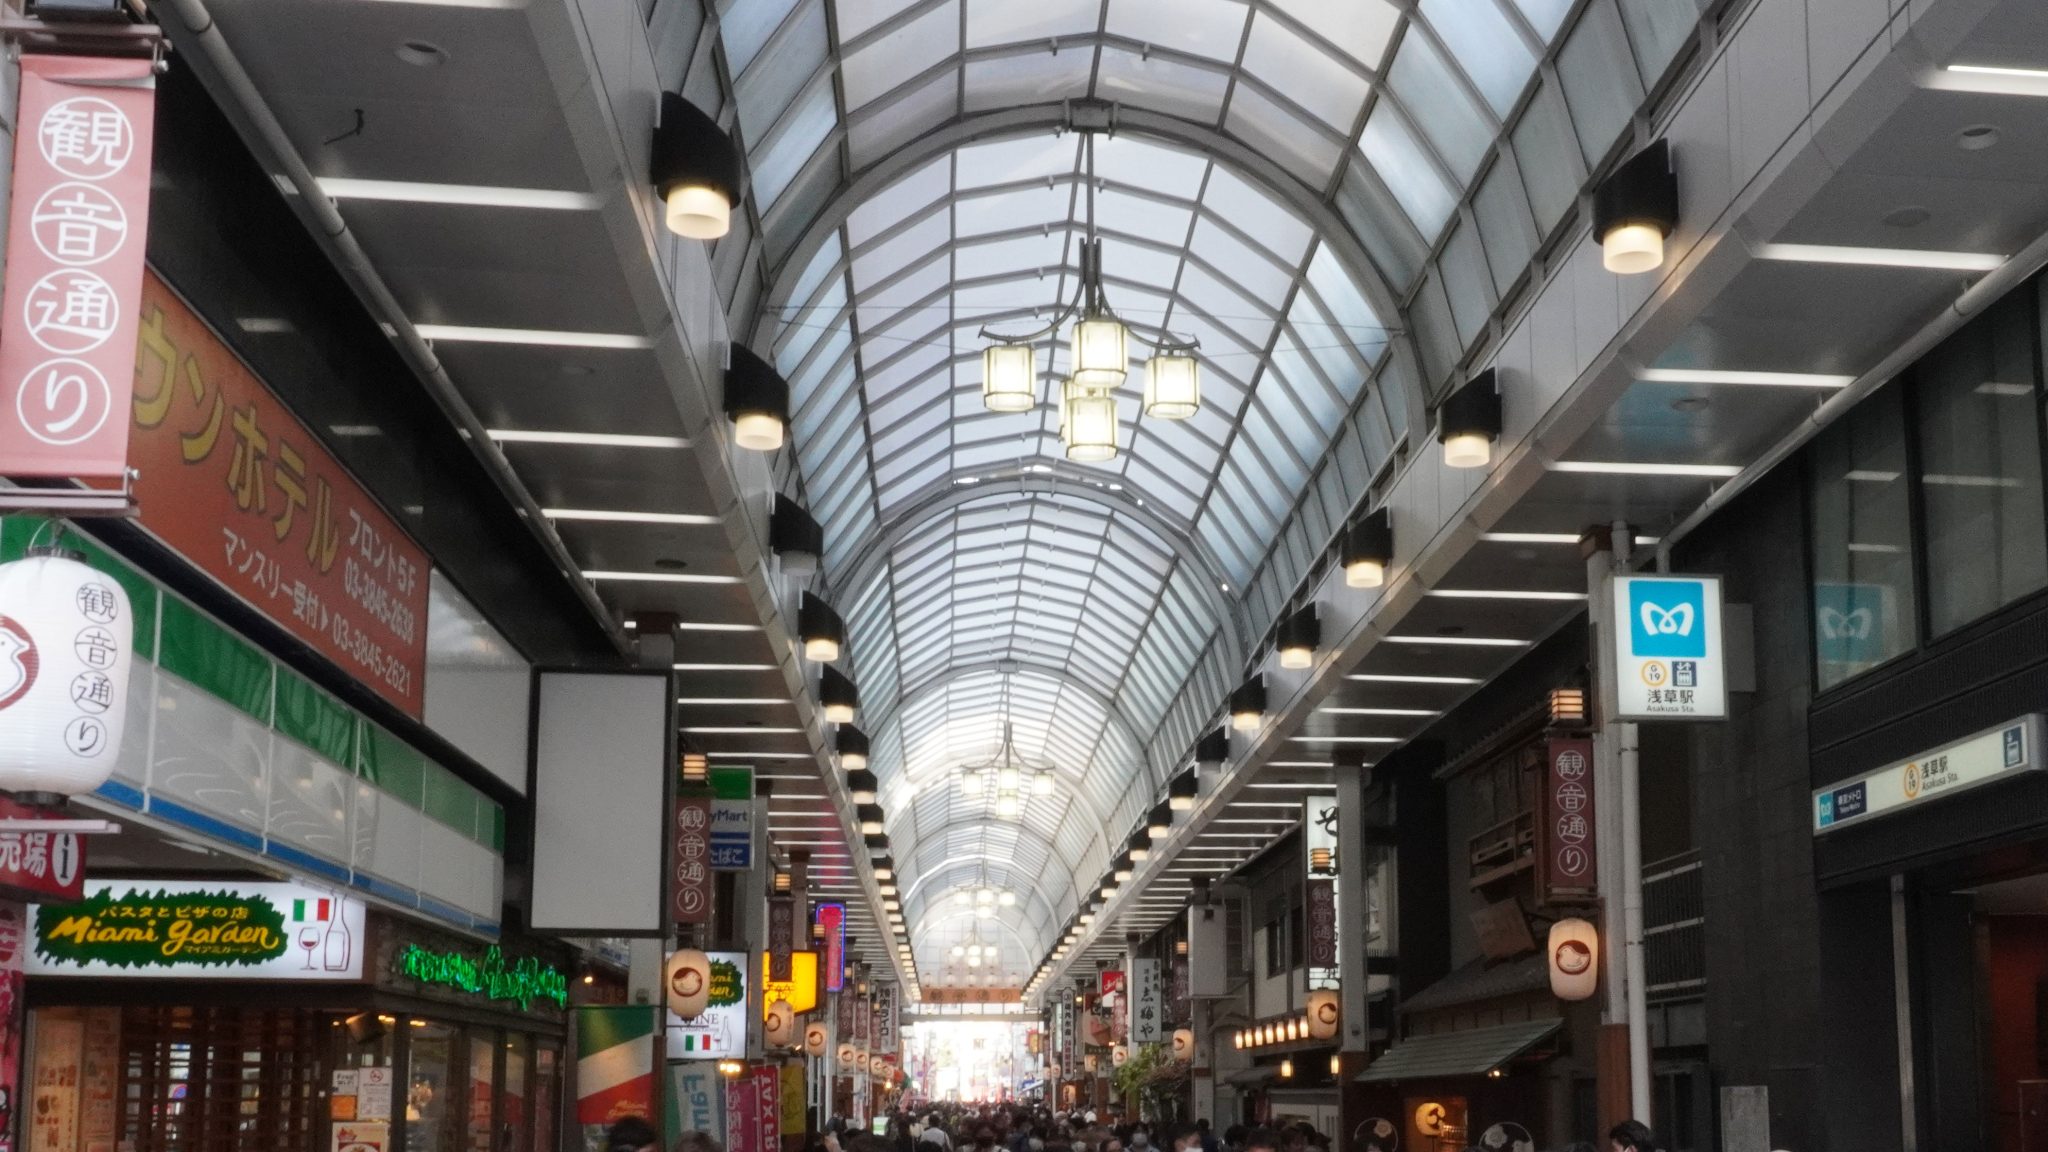 Shopping Street Arcade in Asakusa Tokyo Japan